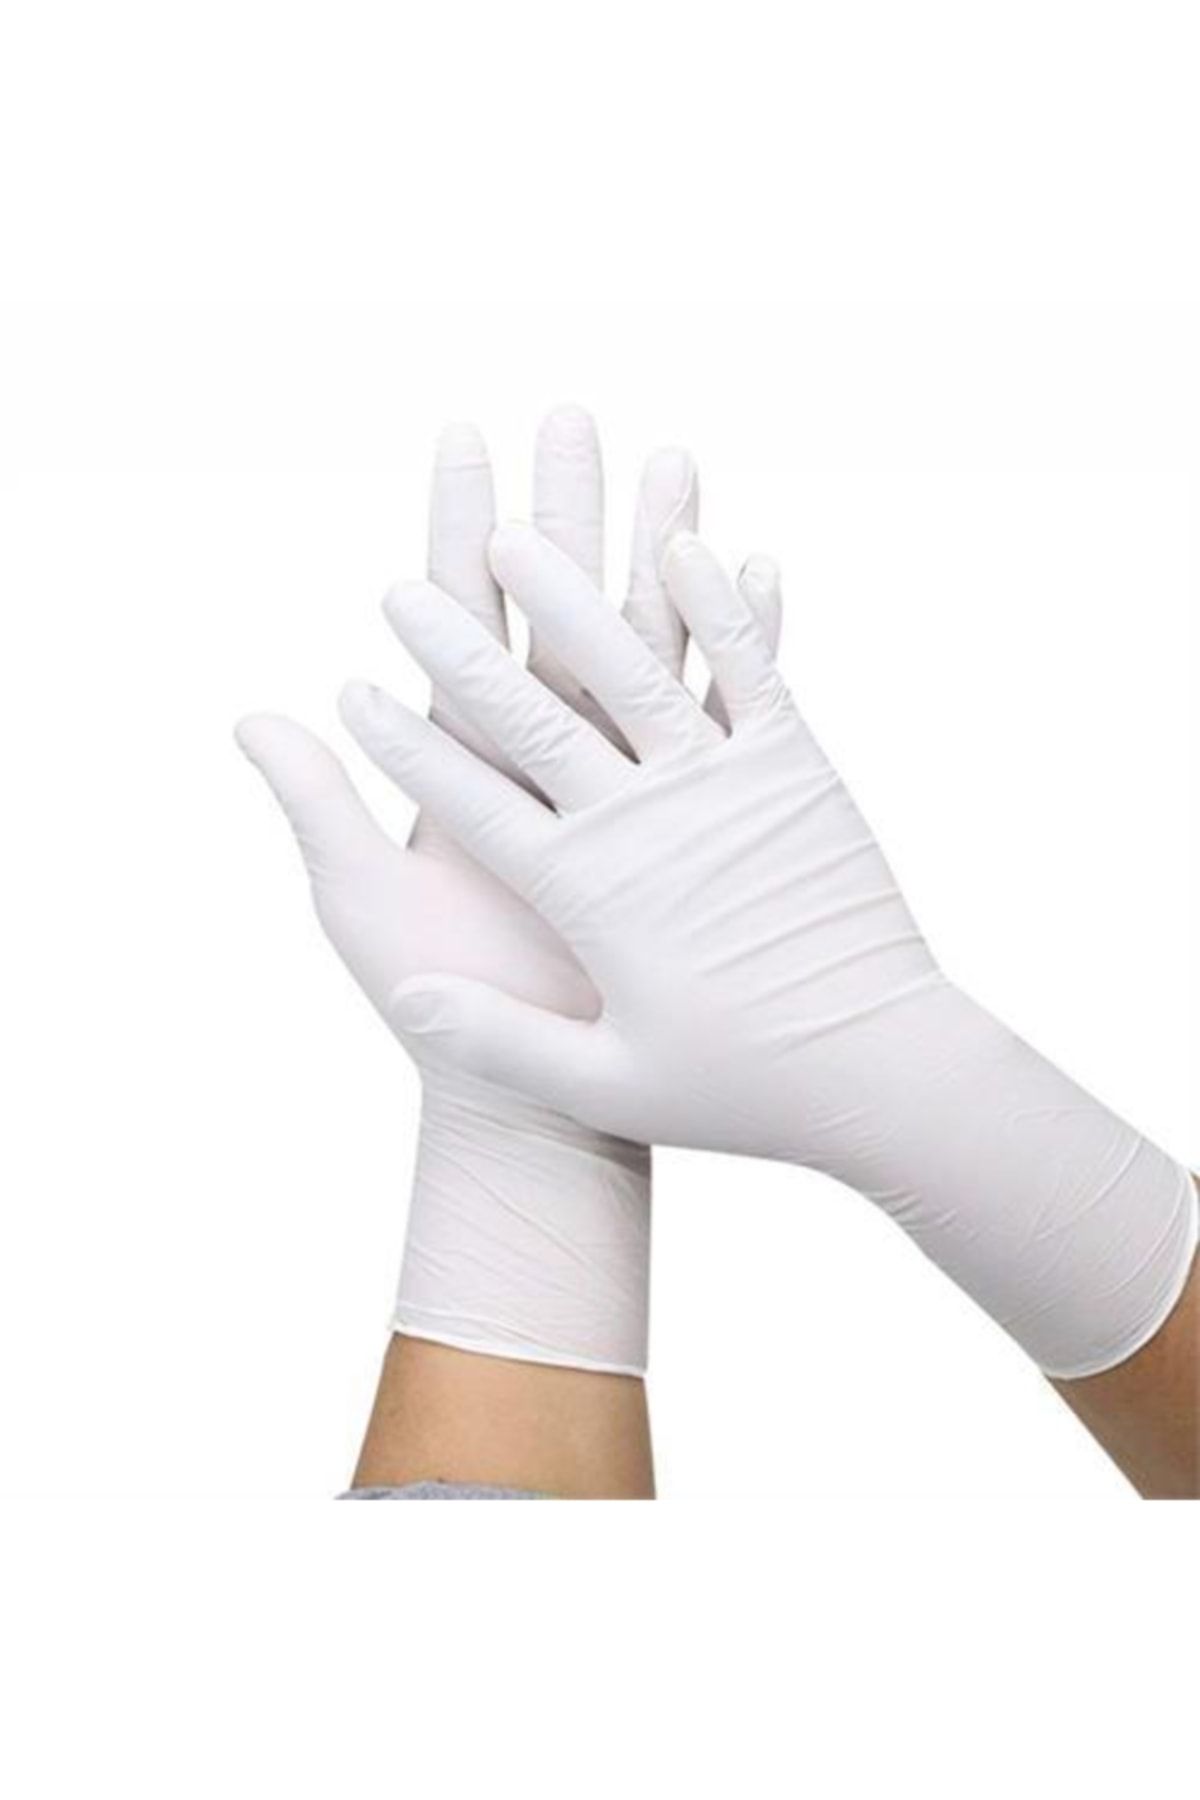 Купить медицинские латексные перчатки. Перчатки Surgical Gloves 50 пар. Чистовье перчатки нитрил белые XL safe&Care 90шт в упаковке. Nitrile Gloves перчатки. Перчатки нитрил белый XL.